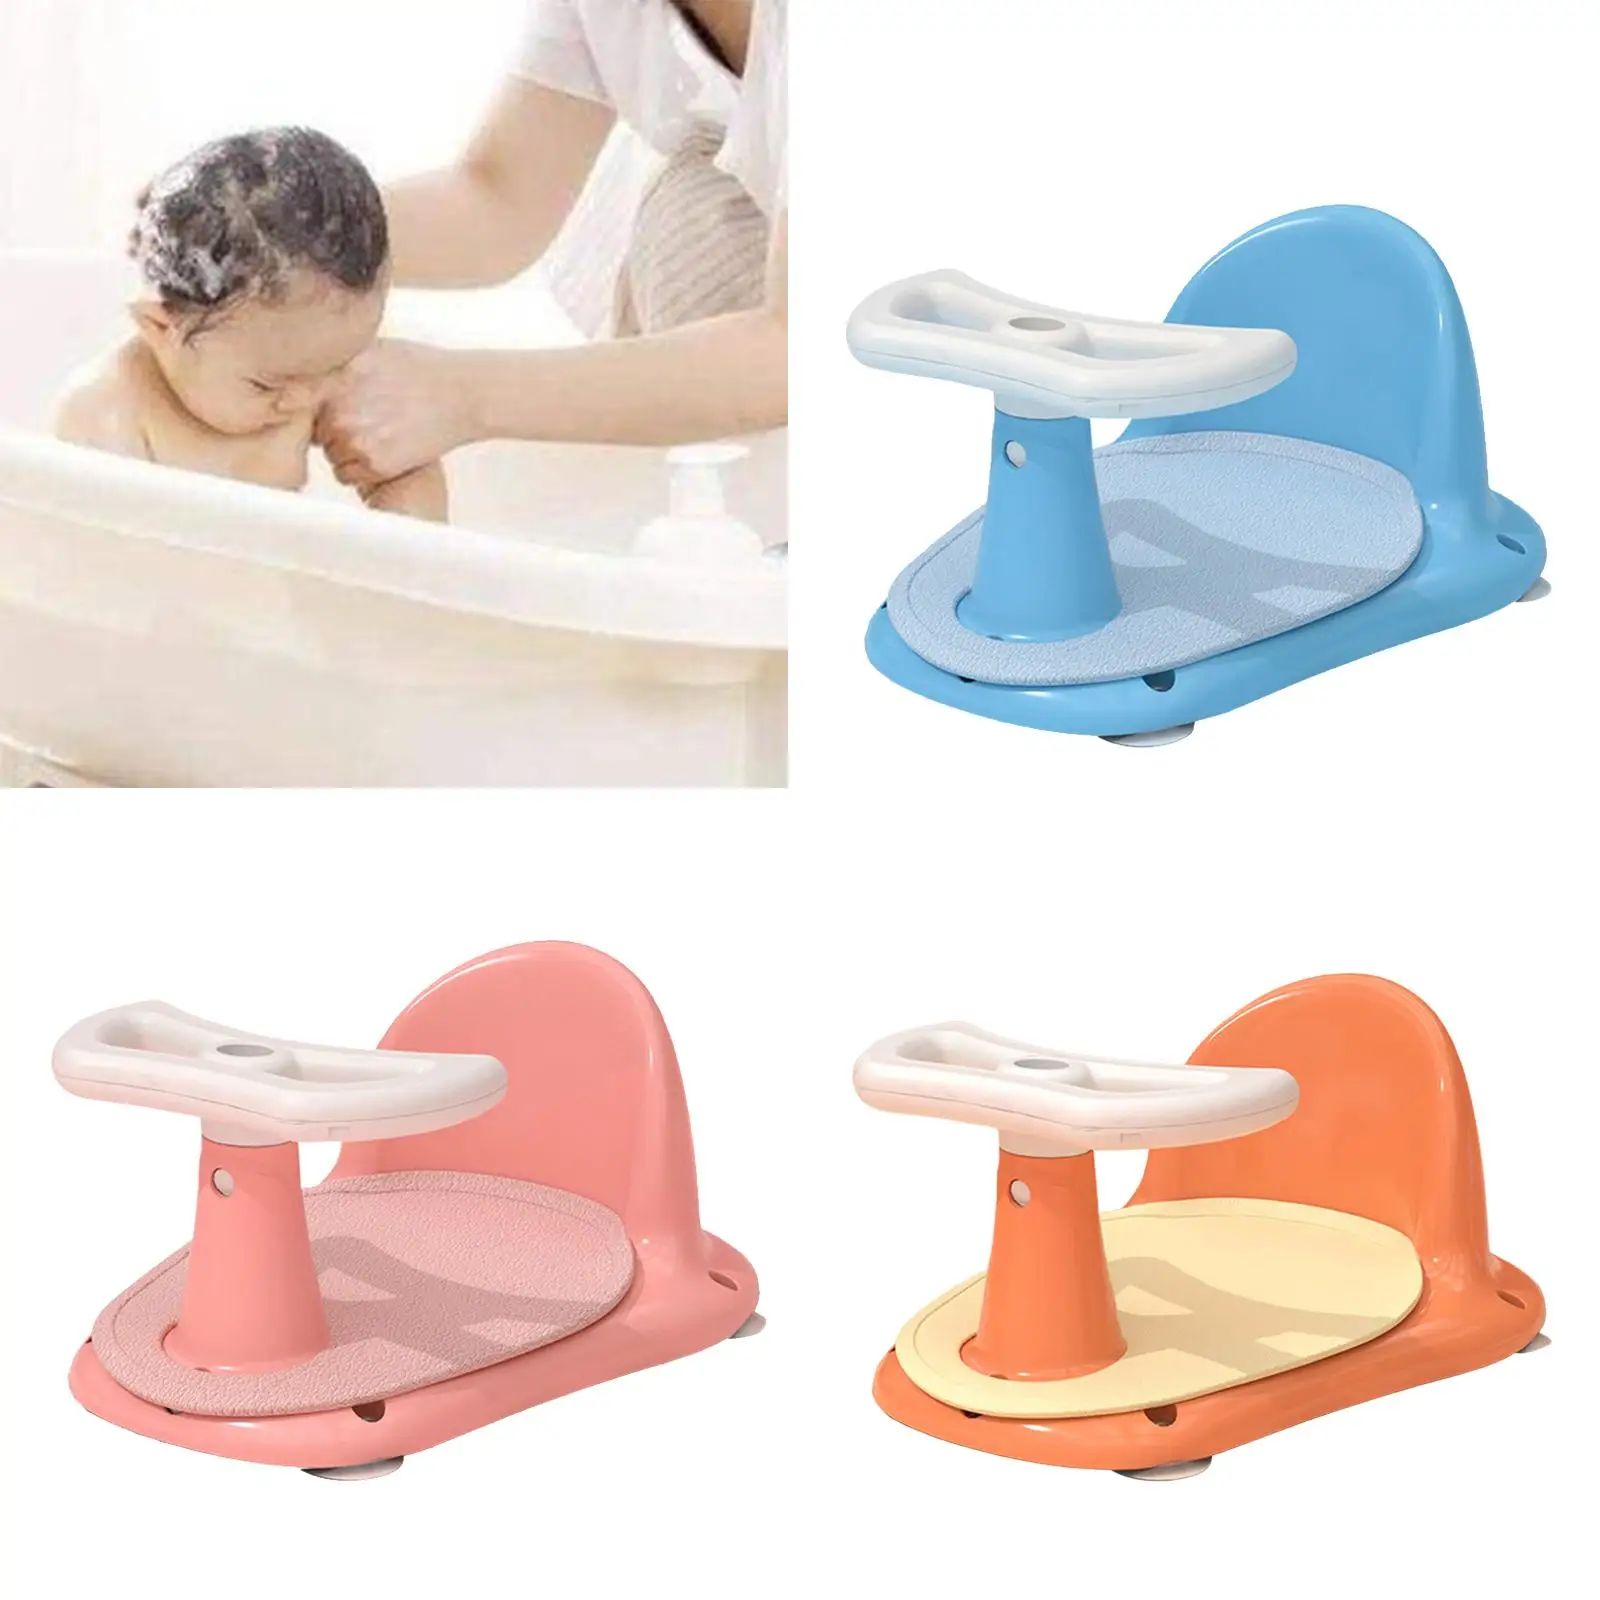 Shower Bath Seat Bath Tub Seat Bath Seat Support Bathroom for Newborn